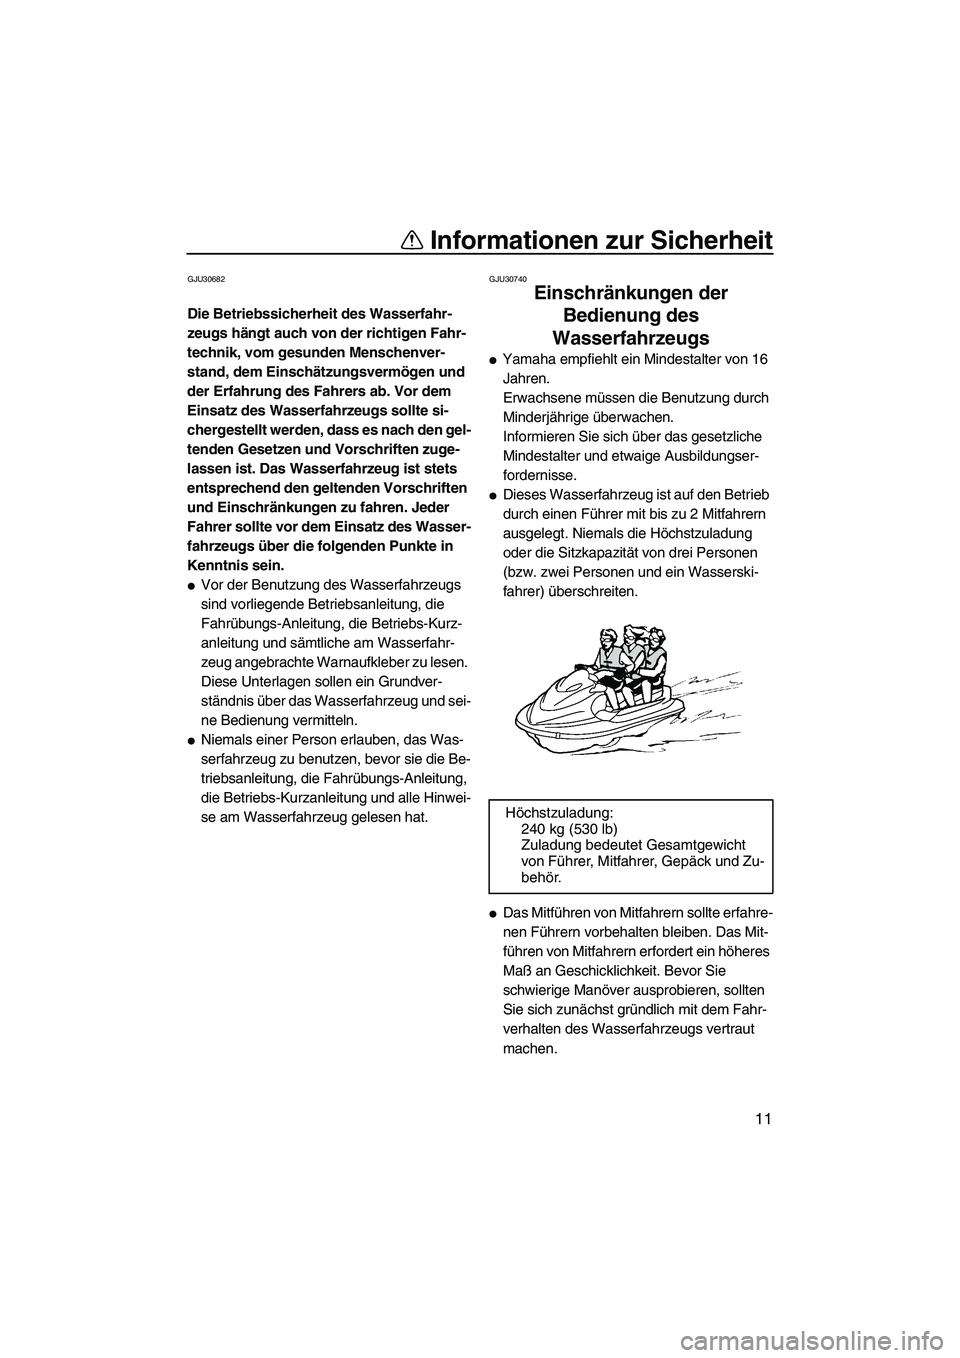 YAMAHA FX HO 2010  Betriebsanleitungen (in German) Informationen zur Sicherheit
11
GJU30682
Die Betriebssicherheit des Wasserfahr-
zeugs hängt auch von der richtigen Fahr-
technik, vom gesunden Menschenver-
stand, dem Einschätzungsvermögen und 
der